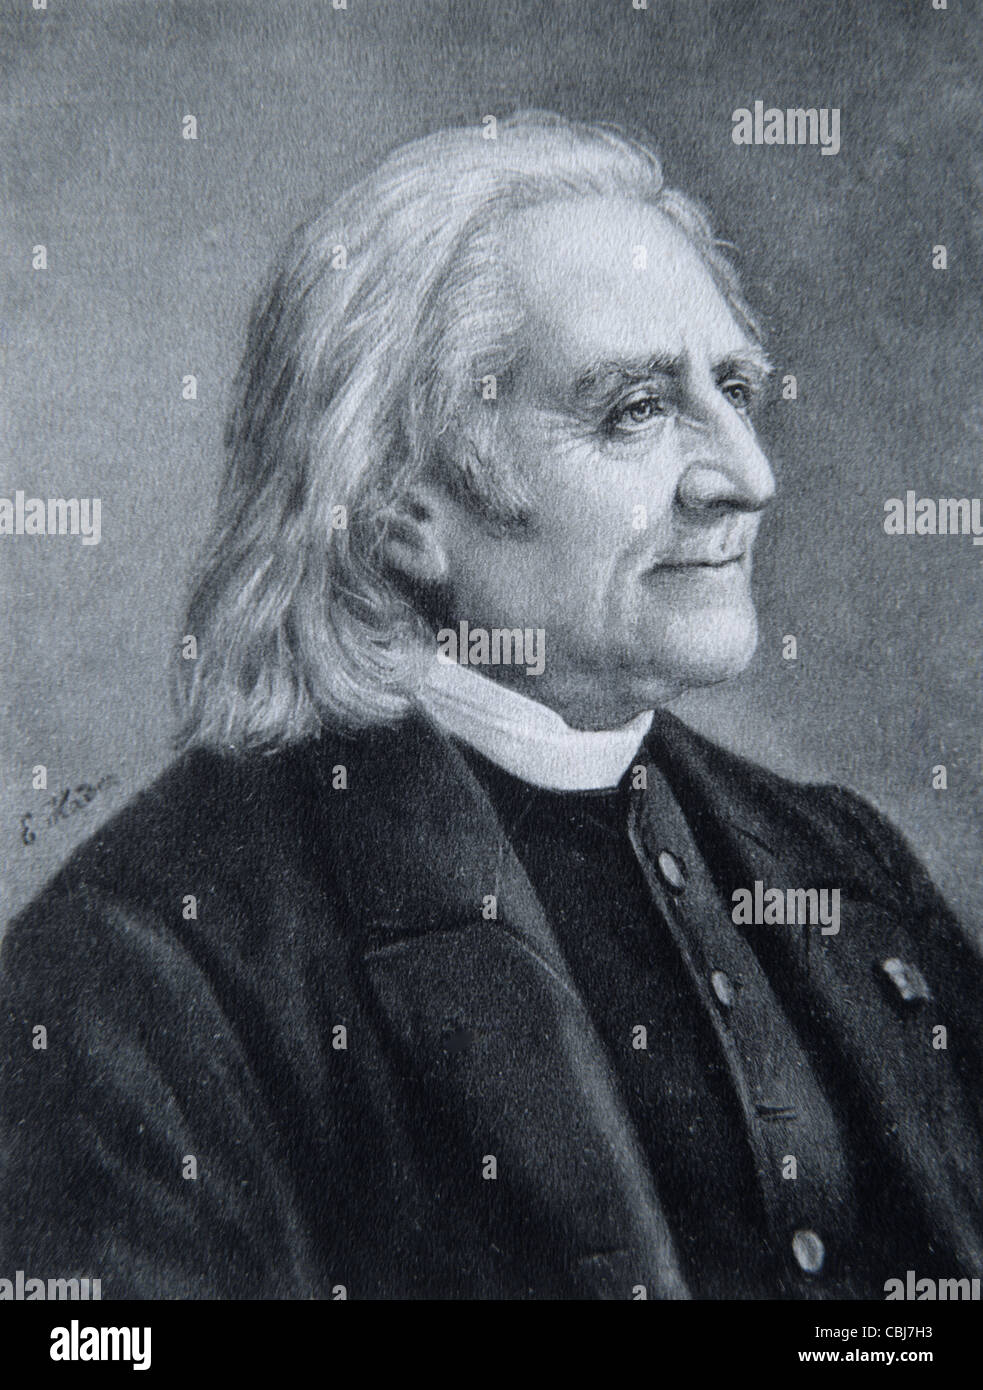 Porträt von Franz Liszt (1811-86), ungarisch geborener Pianist und Komponist. Vintage Illustration oder Gravur Stockfoto